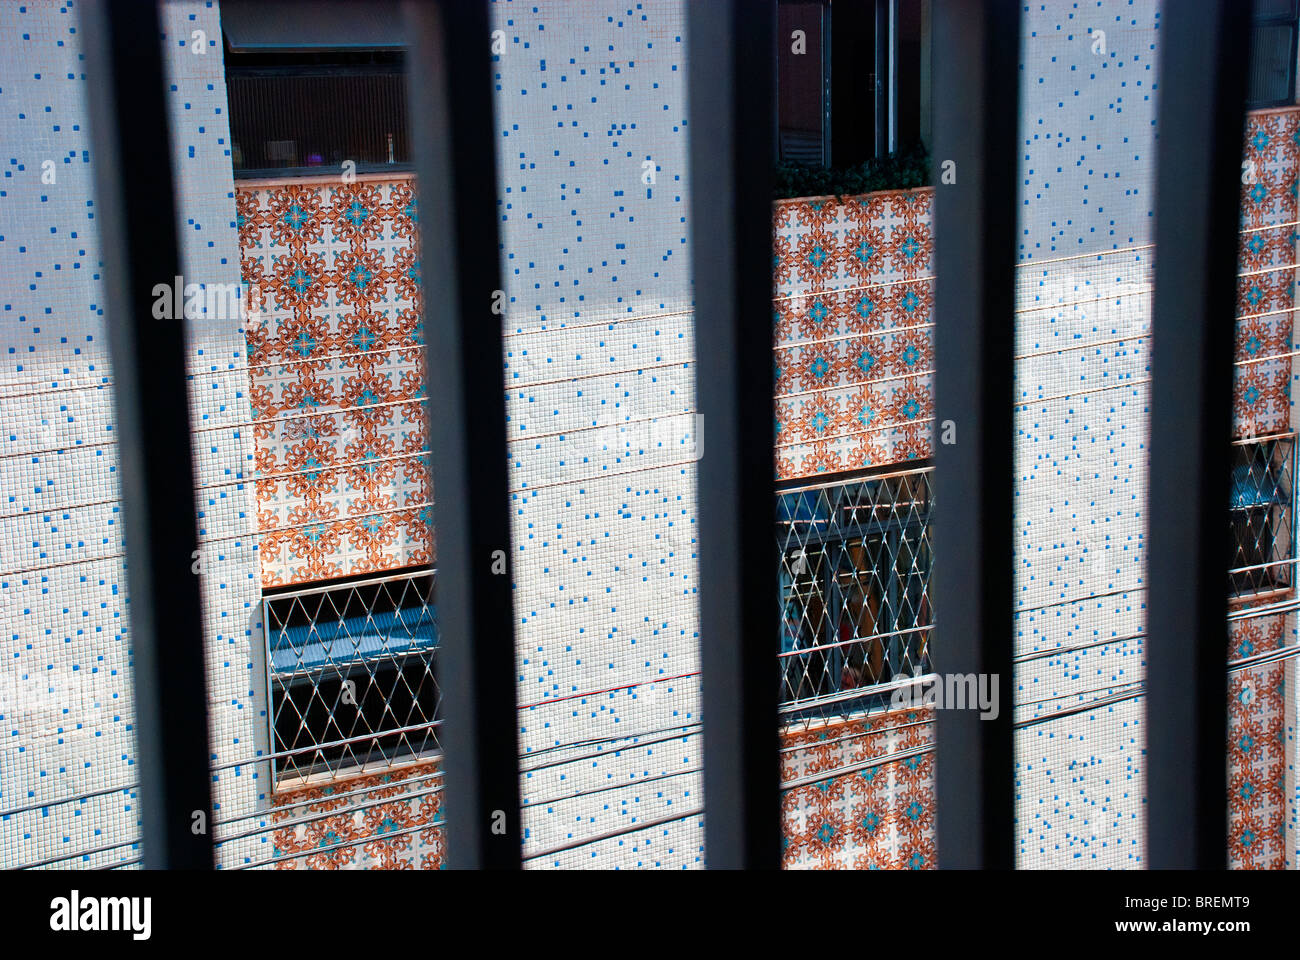 Condo Building in Brazil ceramic tiles Stock Photo